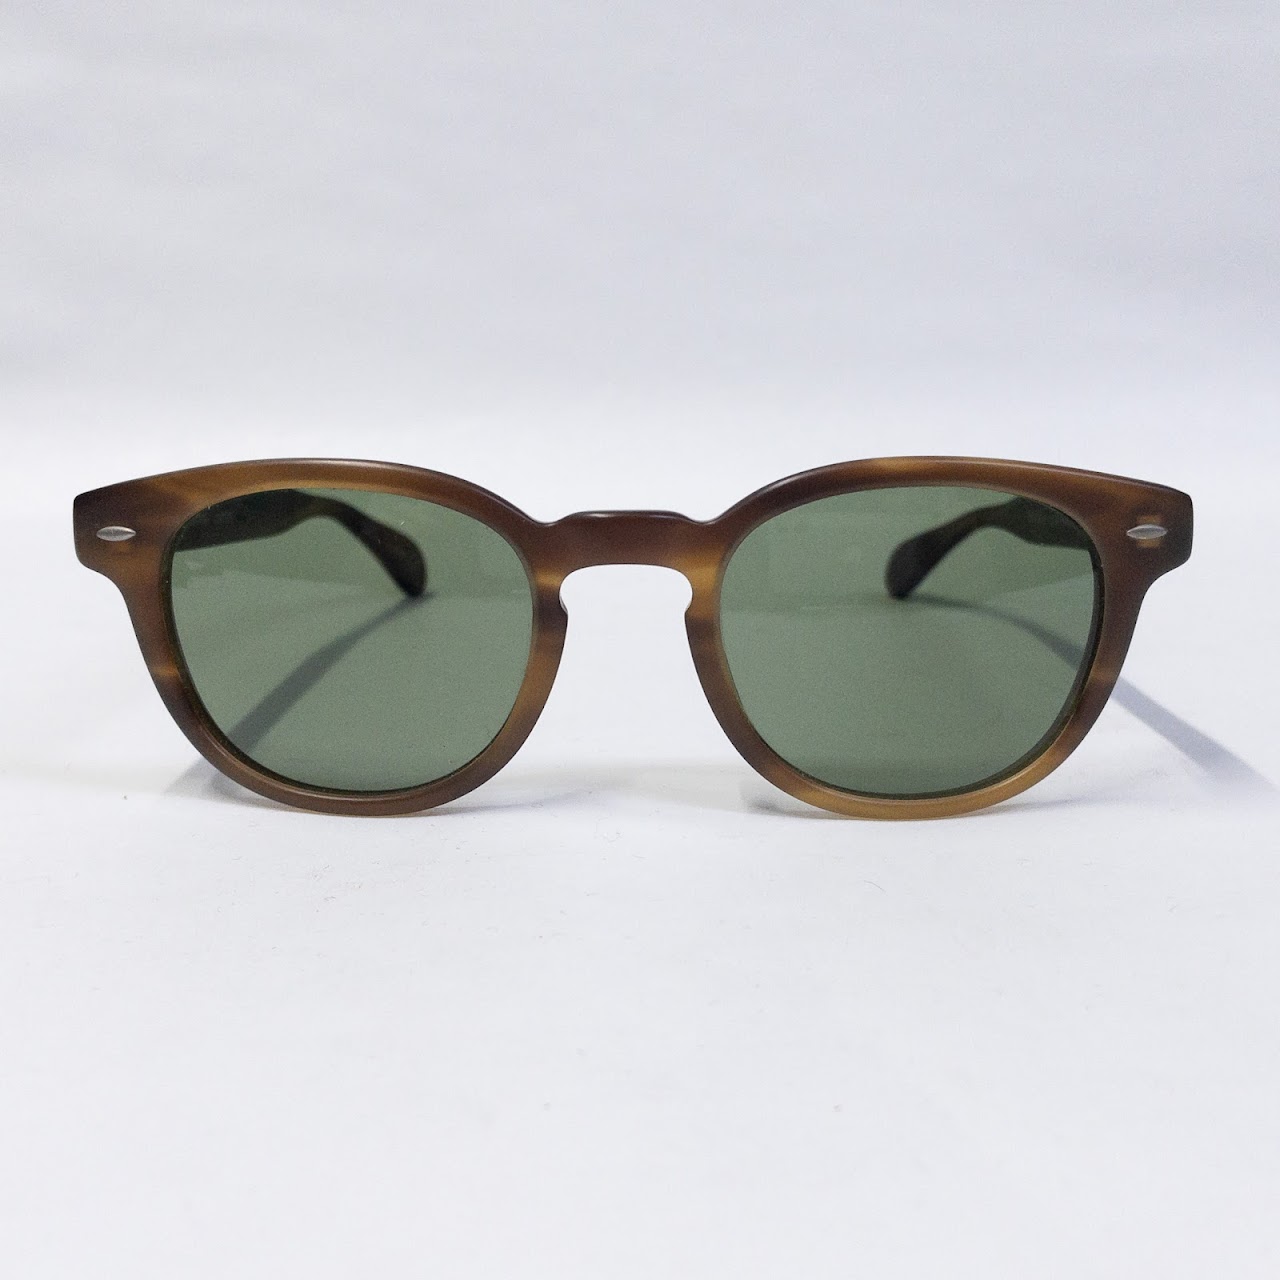 Oliver Peoples Sheldrake Sunglasses